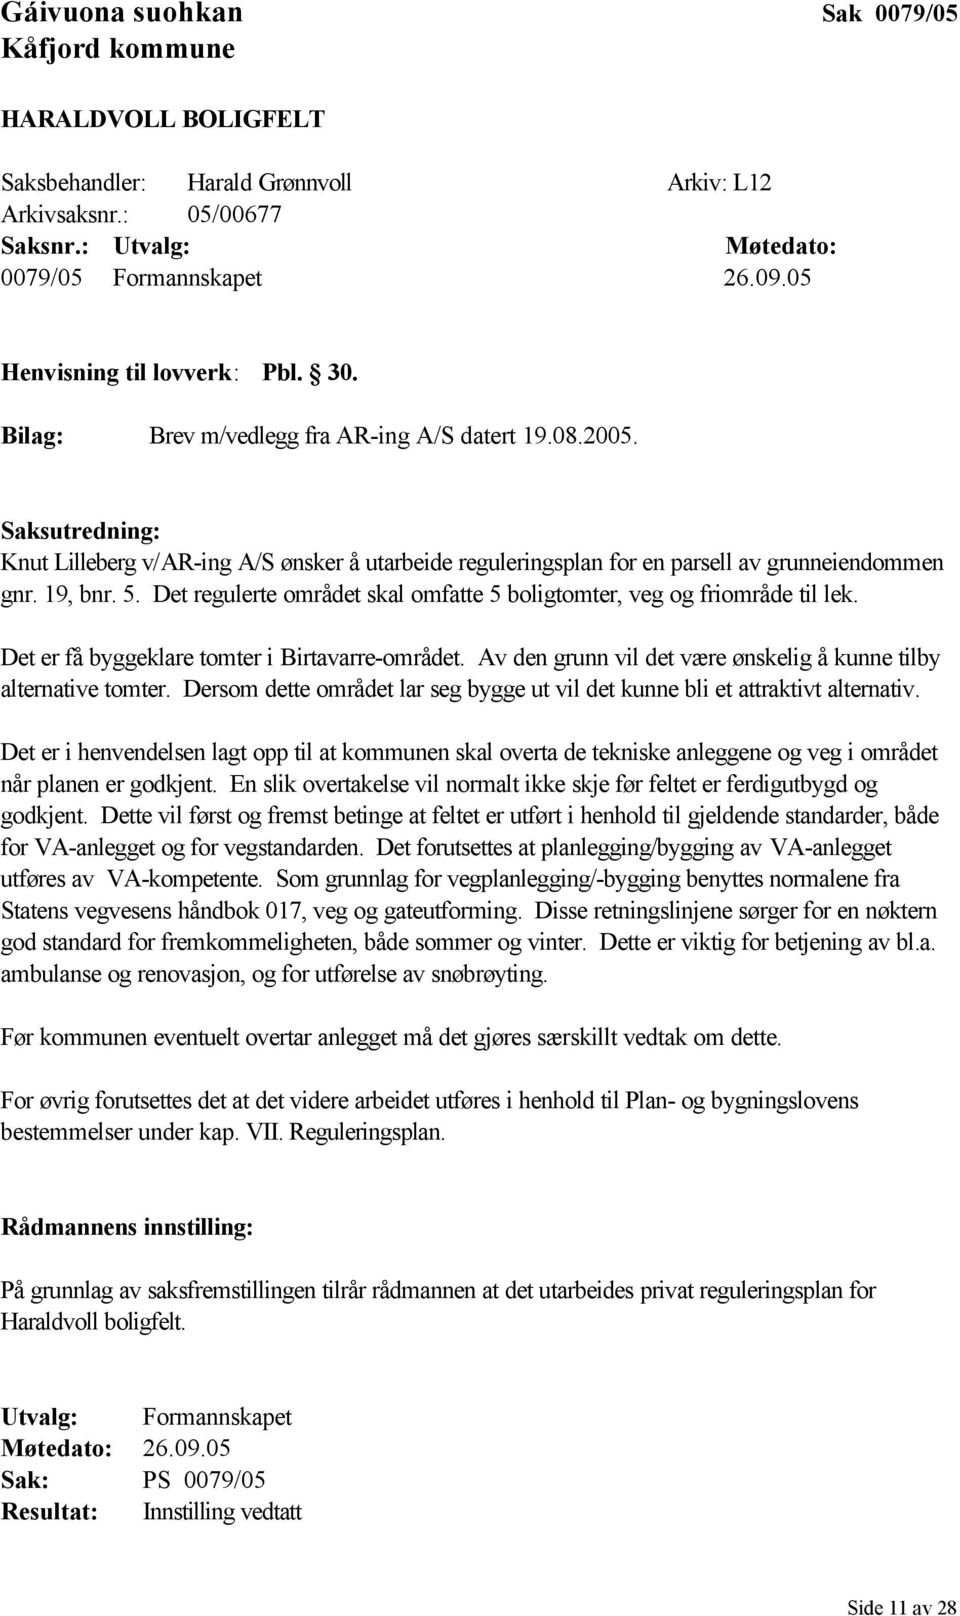 Saksutredning: Knut Lilleberg v/ar-ing A/S ønsker å utarbeide reguleringsplan for en parsell av grunneiendommen gnr. 19, bnr. 5.